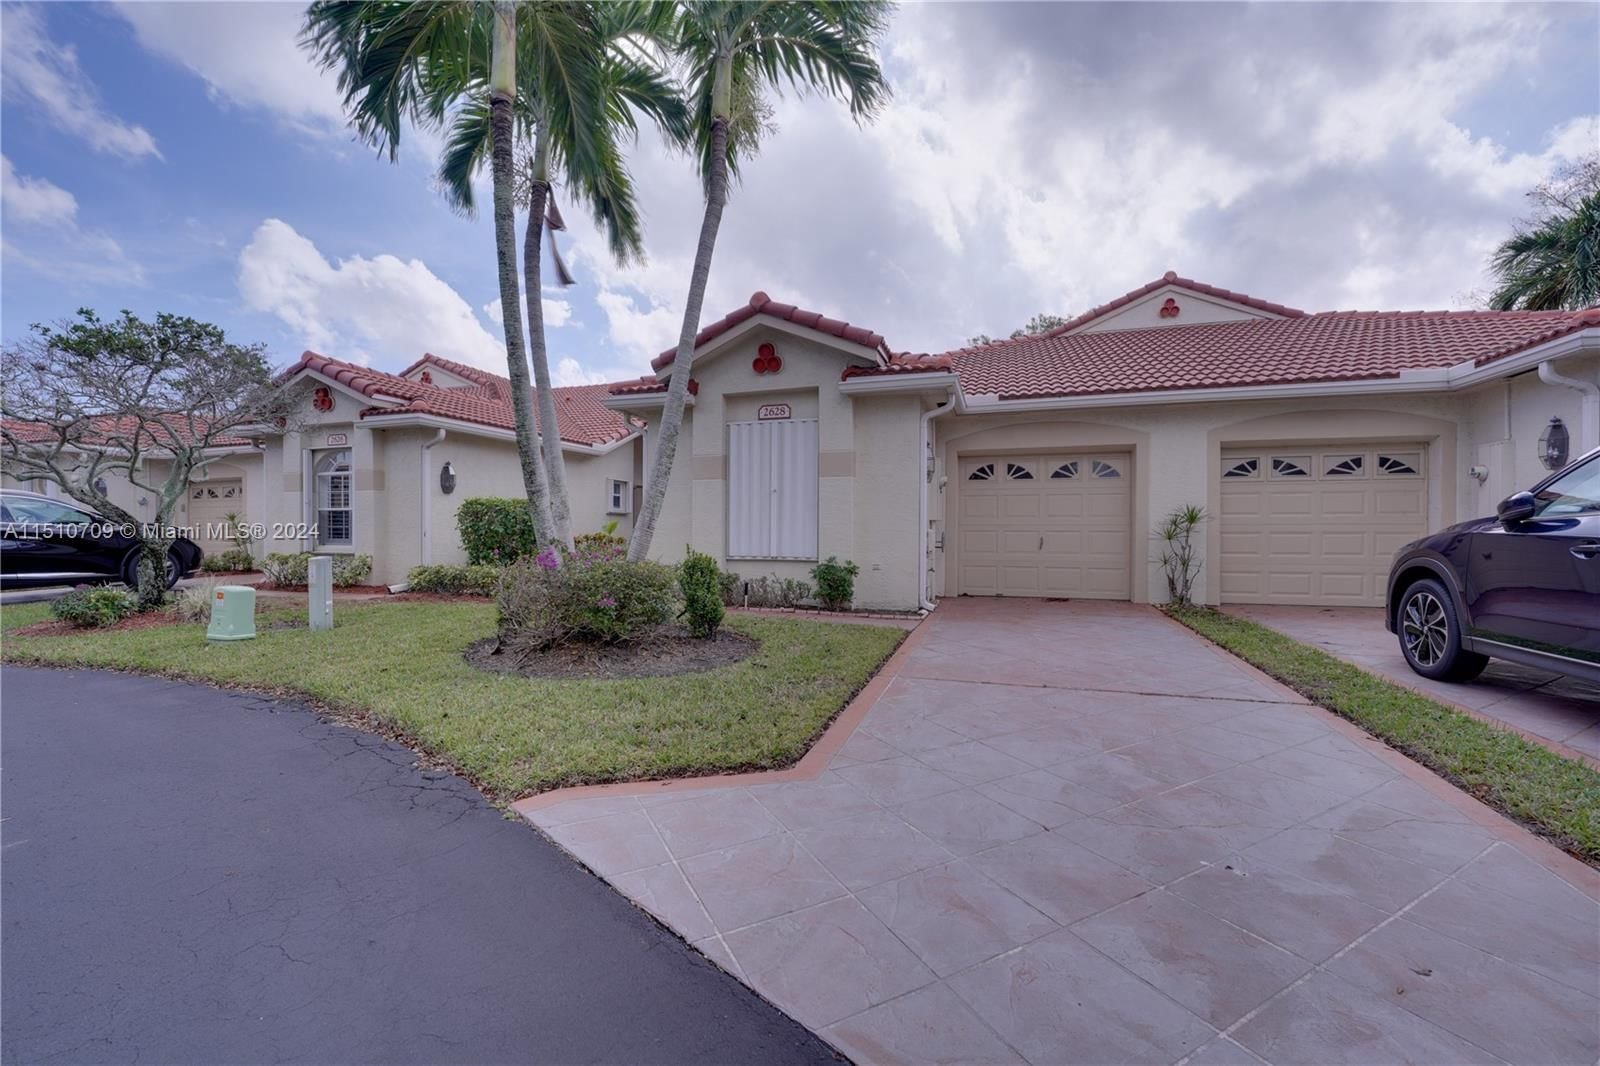 Real estate property located at 2628 Mango Creek Ln, Palm Beach County, QUAIL RUN VILLAS, Boynton Beach, FL